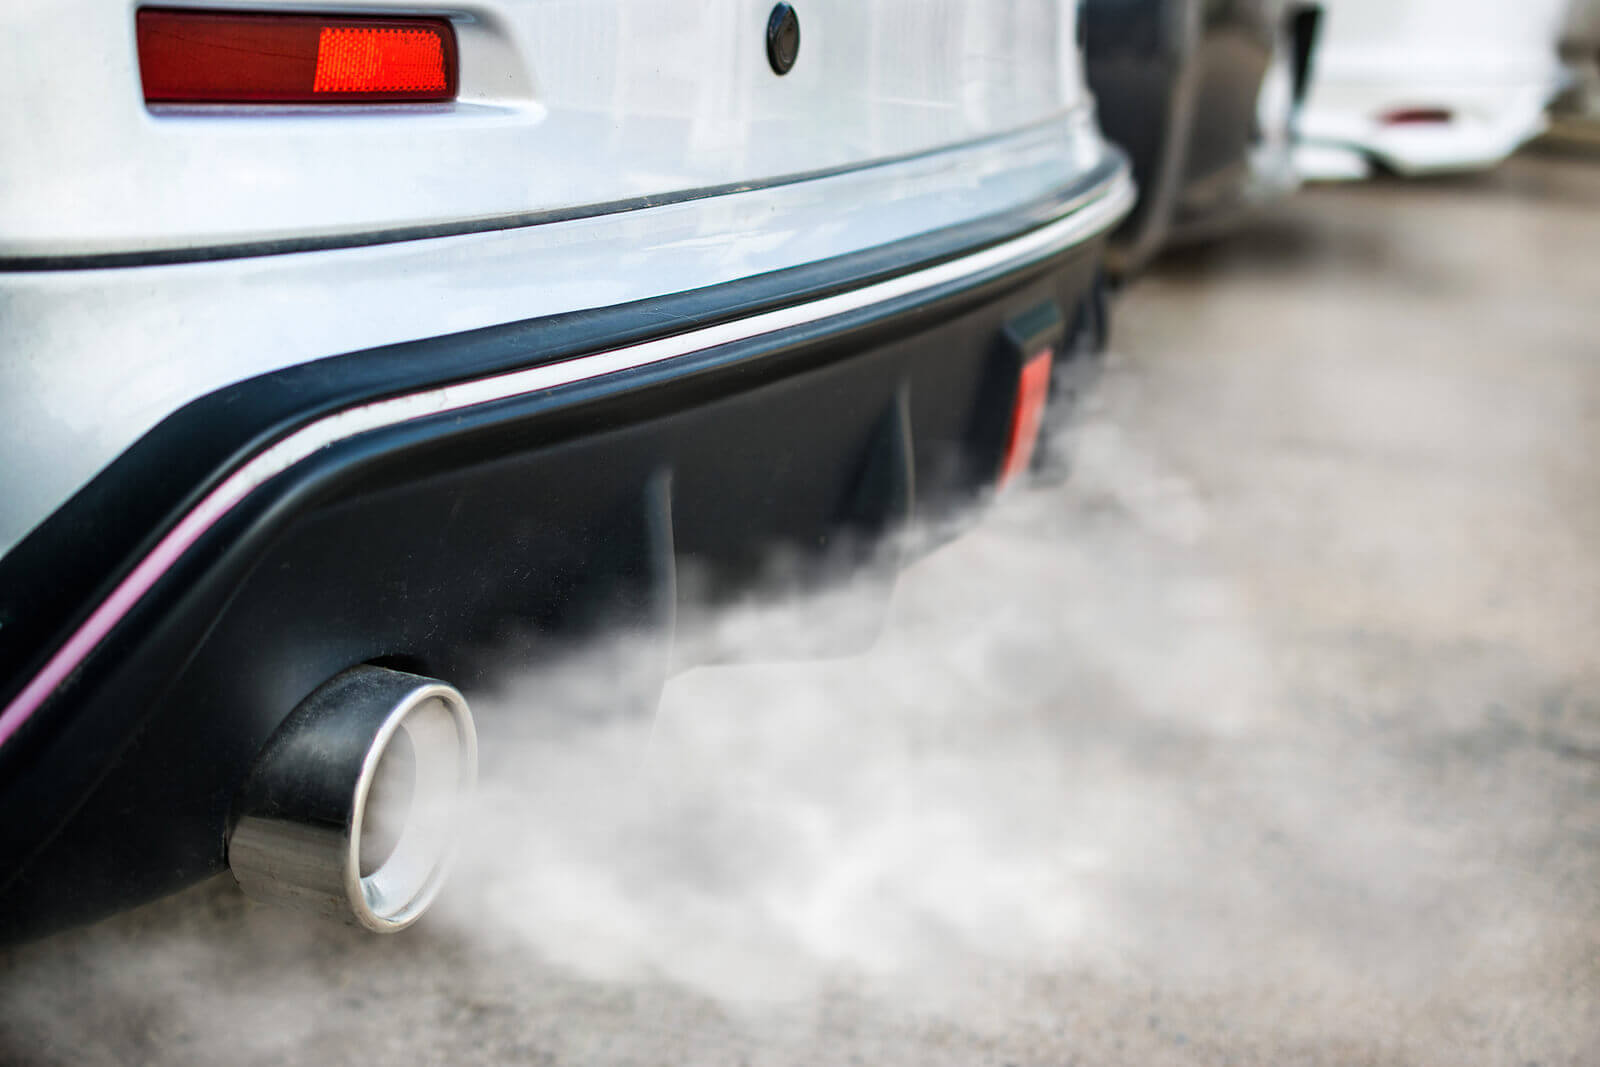 Autoabgase rauchen stark, weißer Rauch strömt in die Atmosphäre